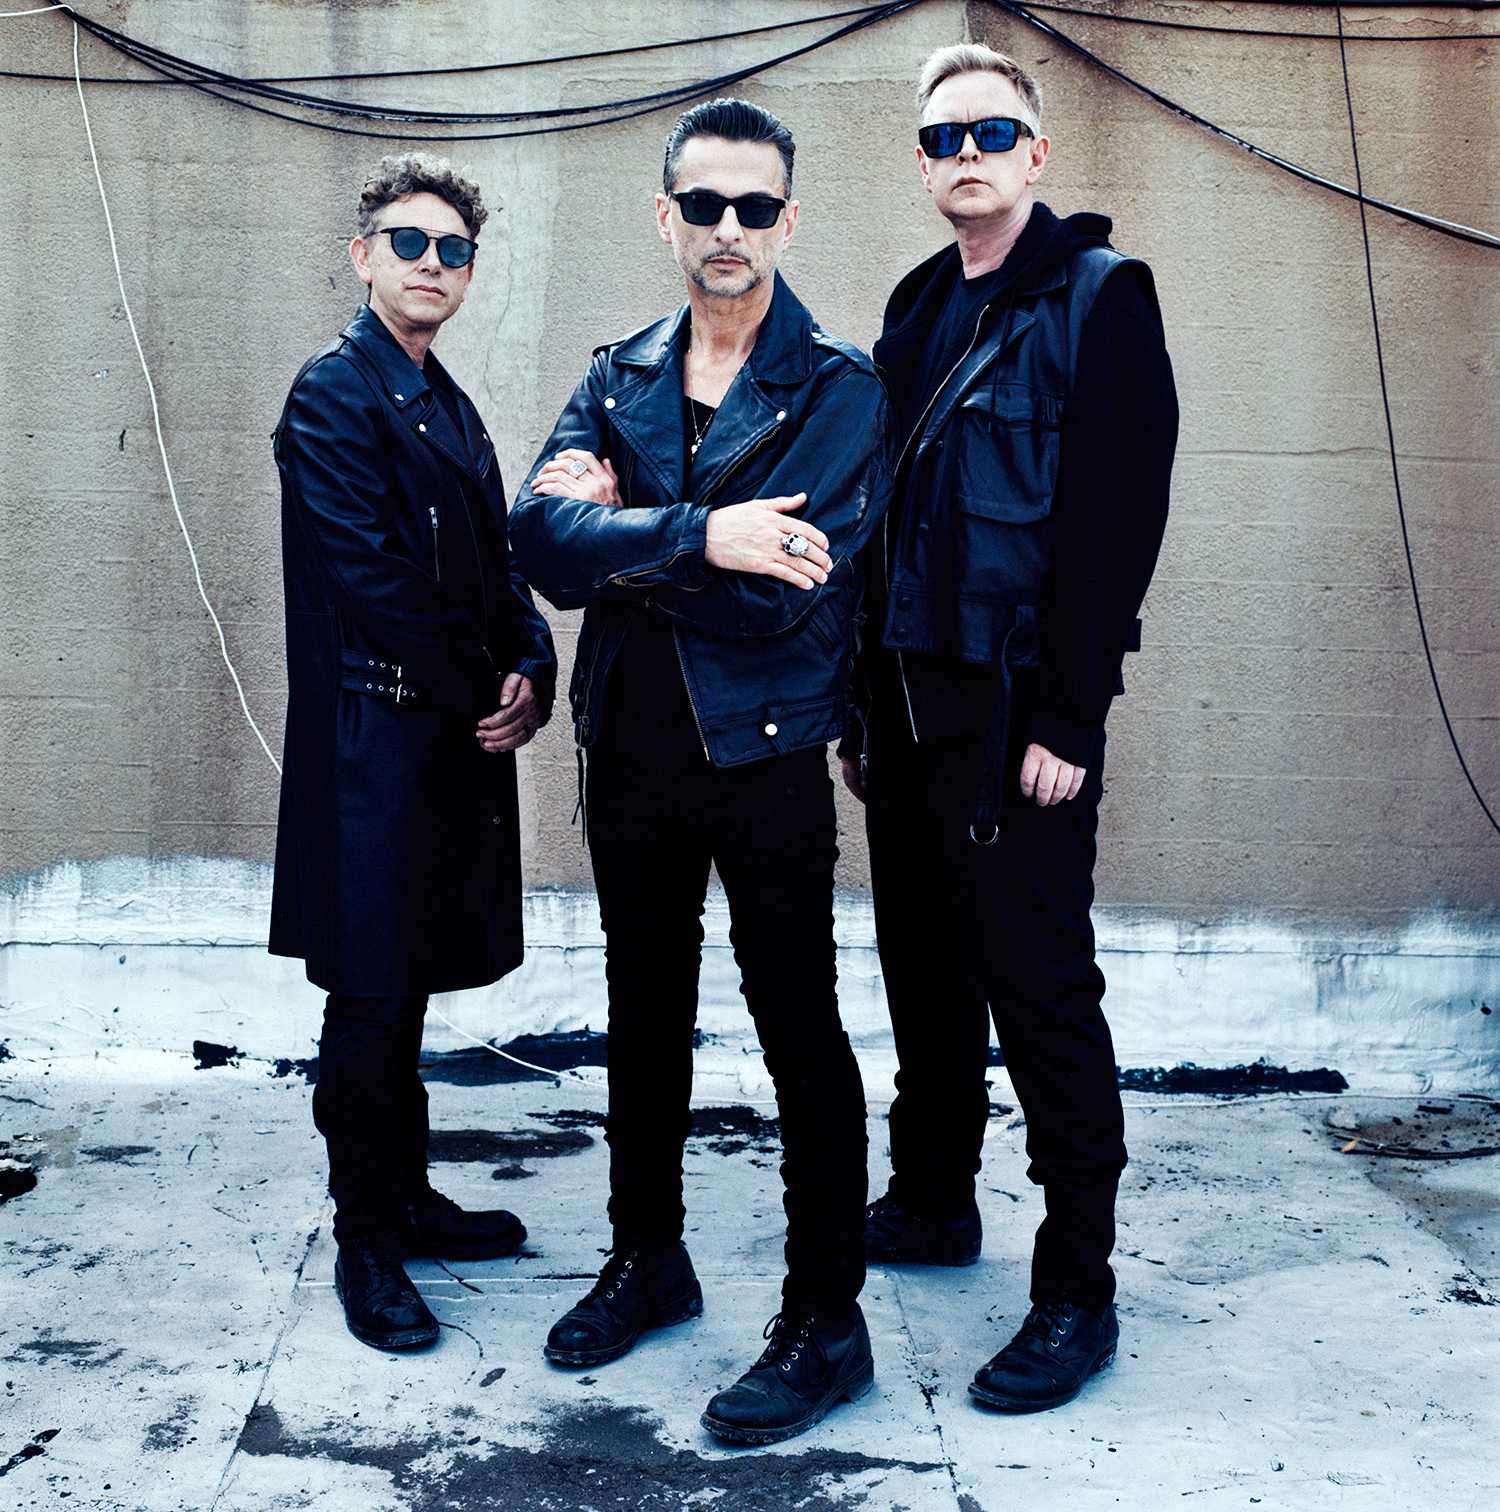 Рождение depeche mode 1986-1998 дискографии depeche mode